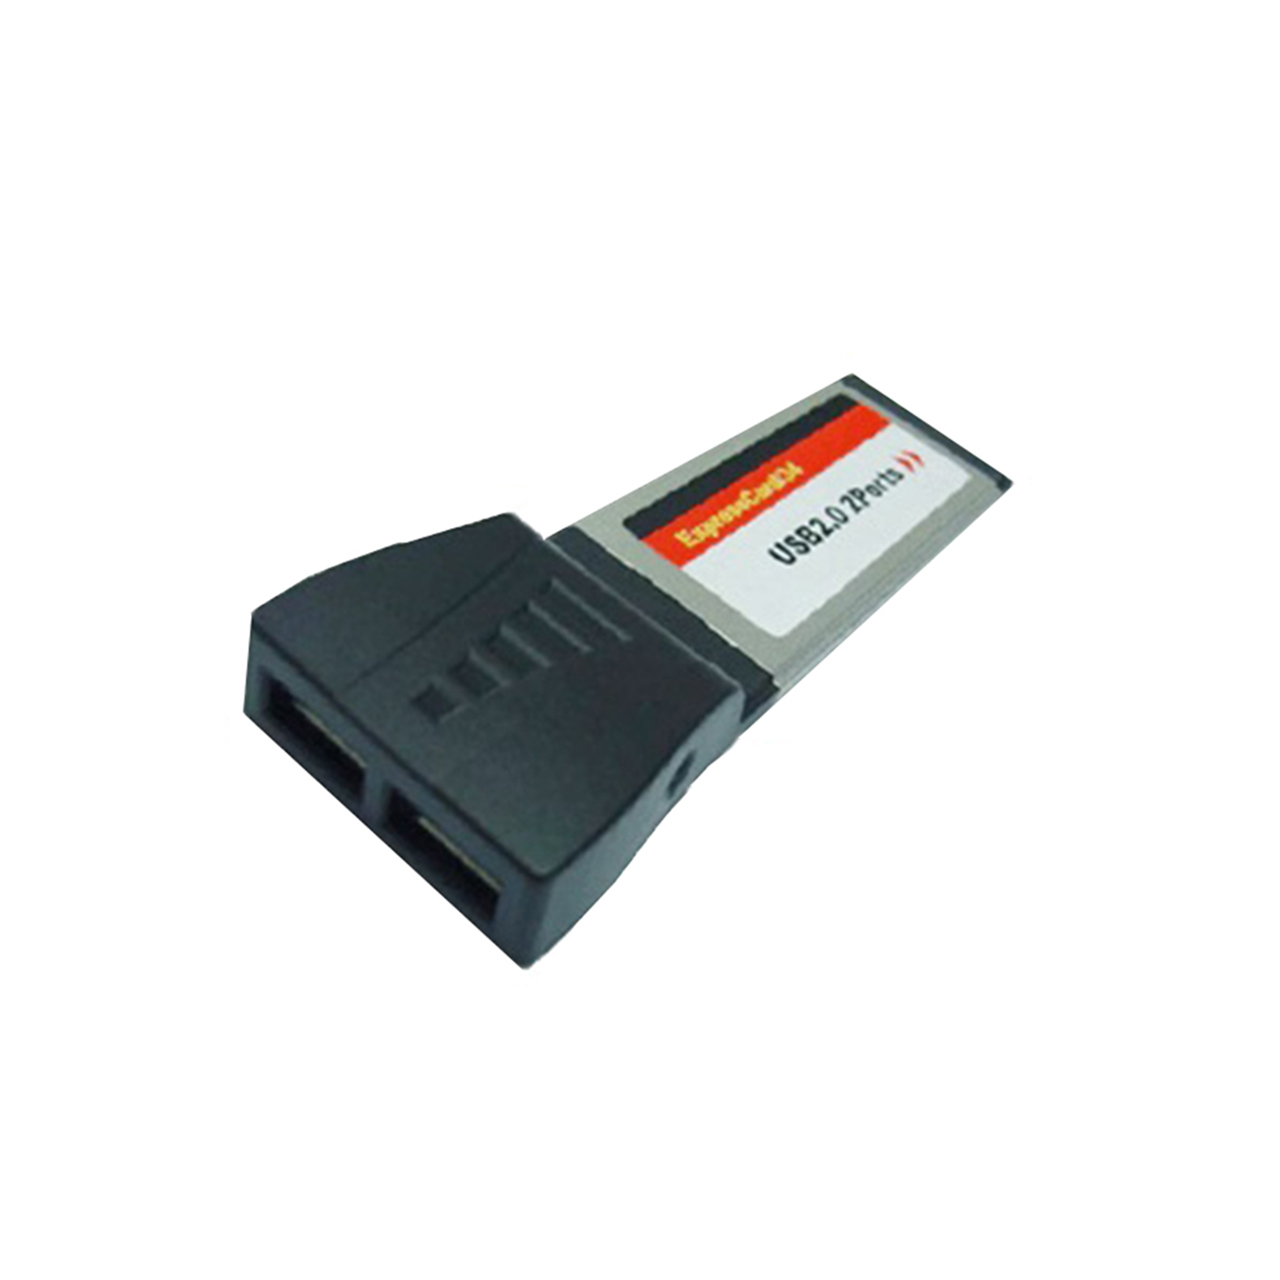 کارت تبدیل PCMCIA Express به USB 2 مدل U-2